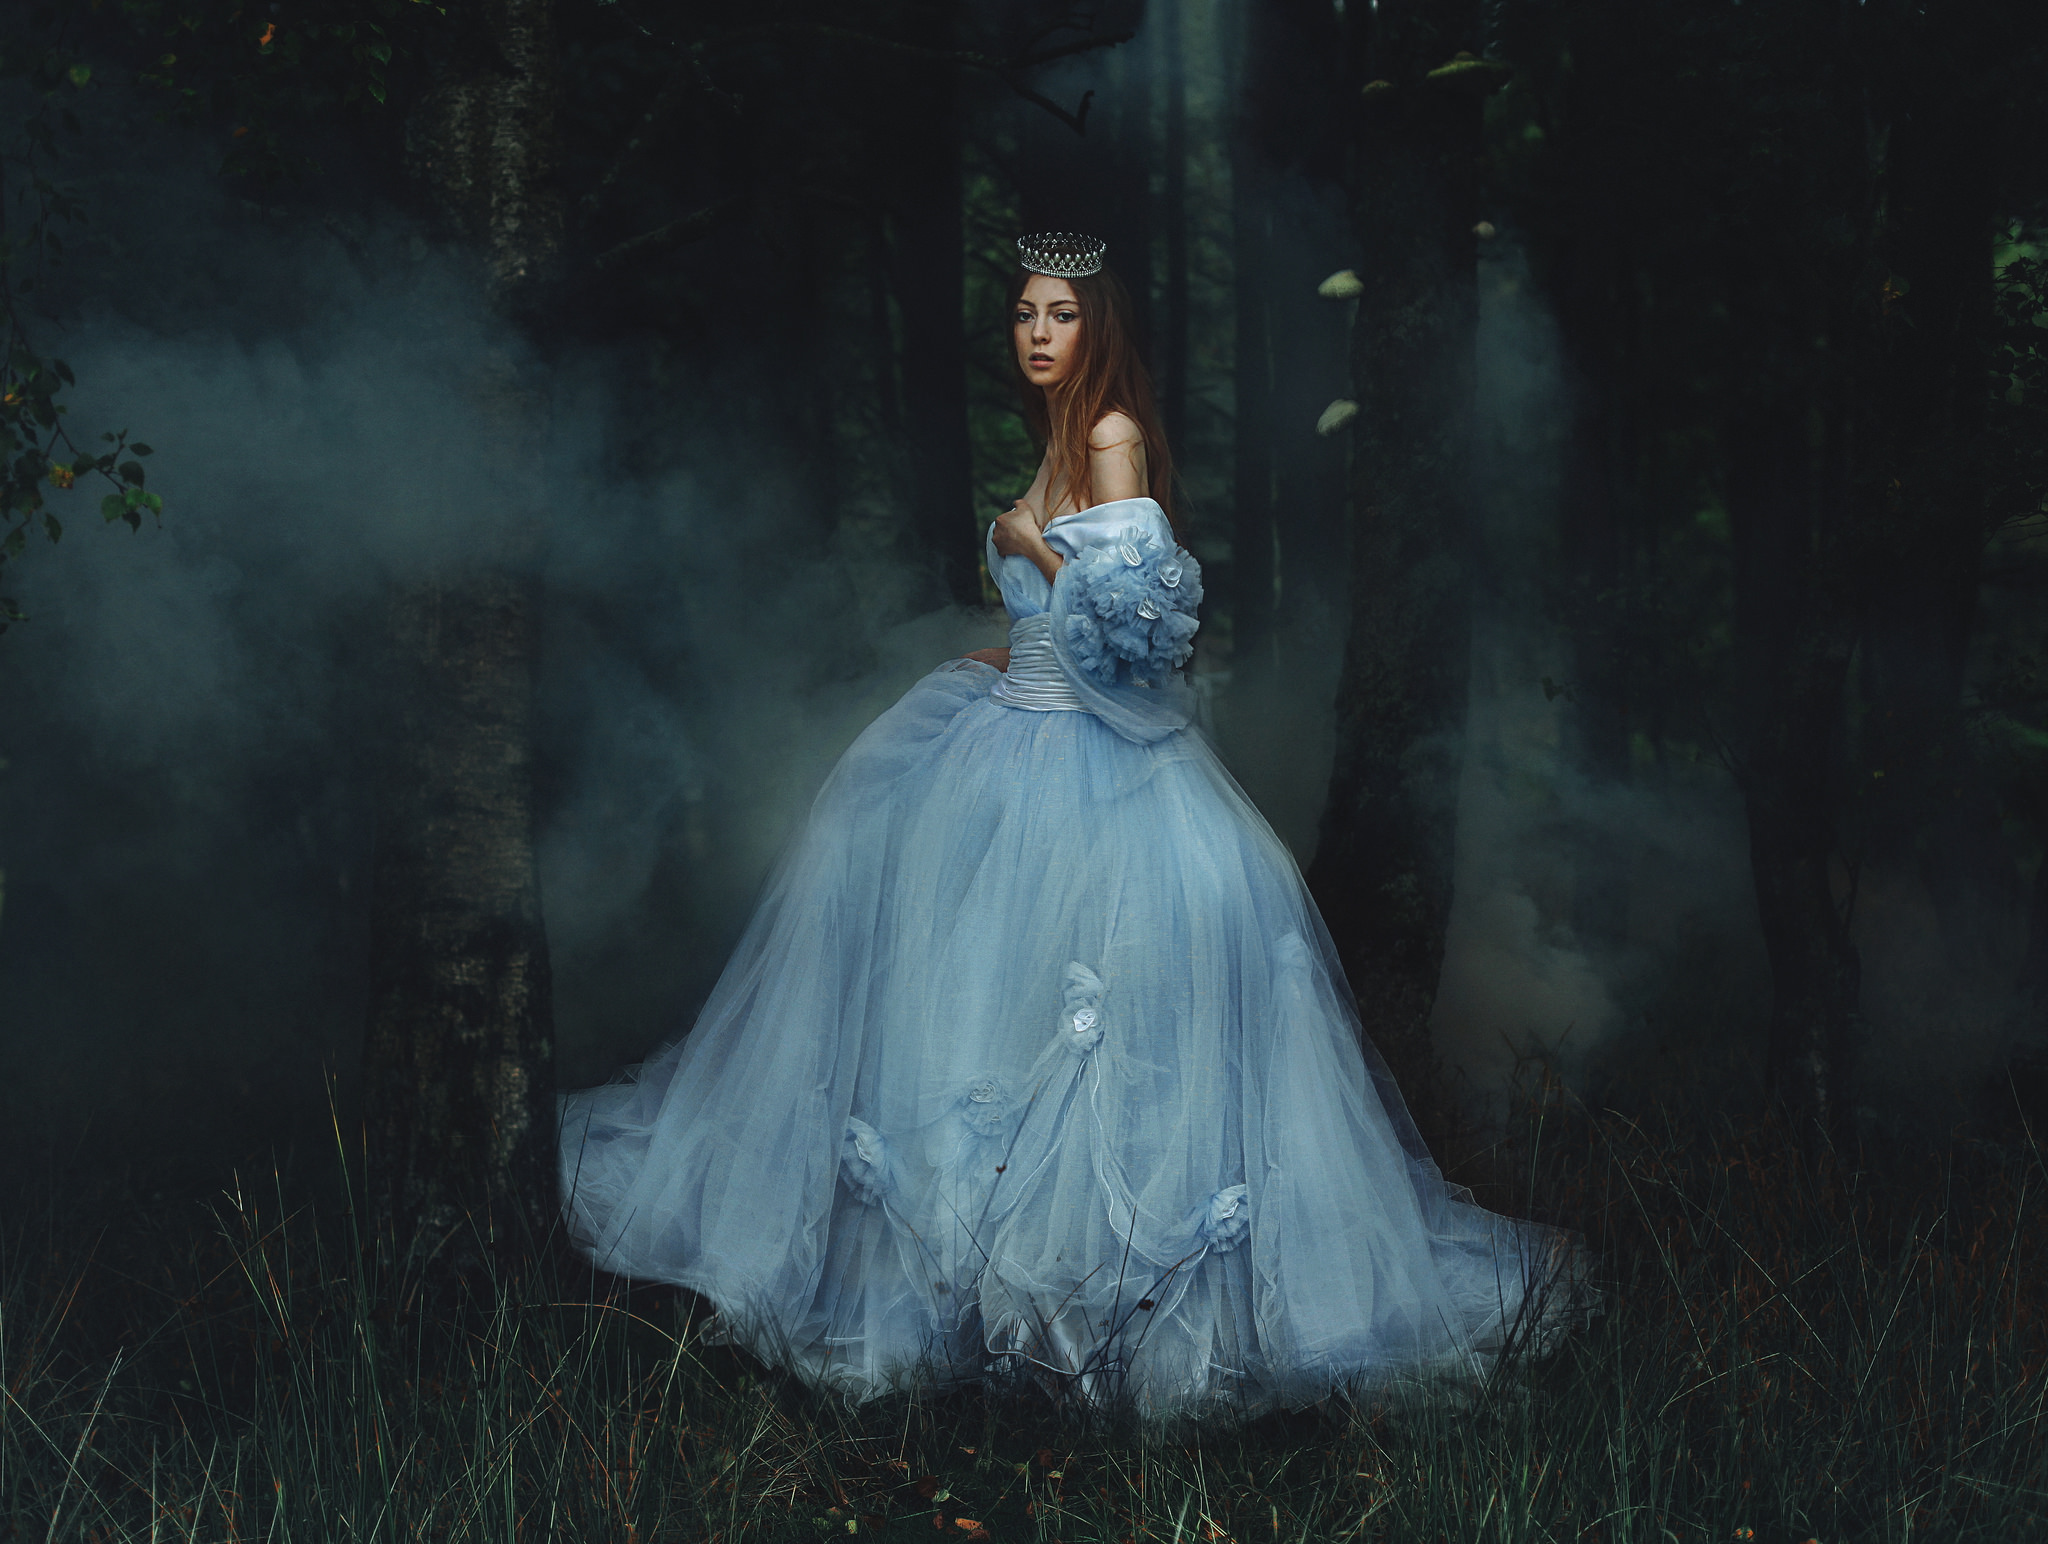 women, artistic, blue dress, crown, fairy tale, fog, forest